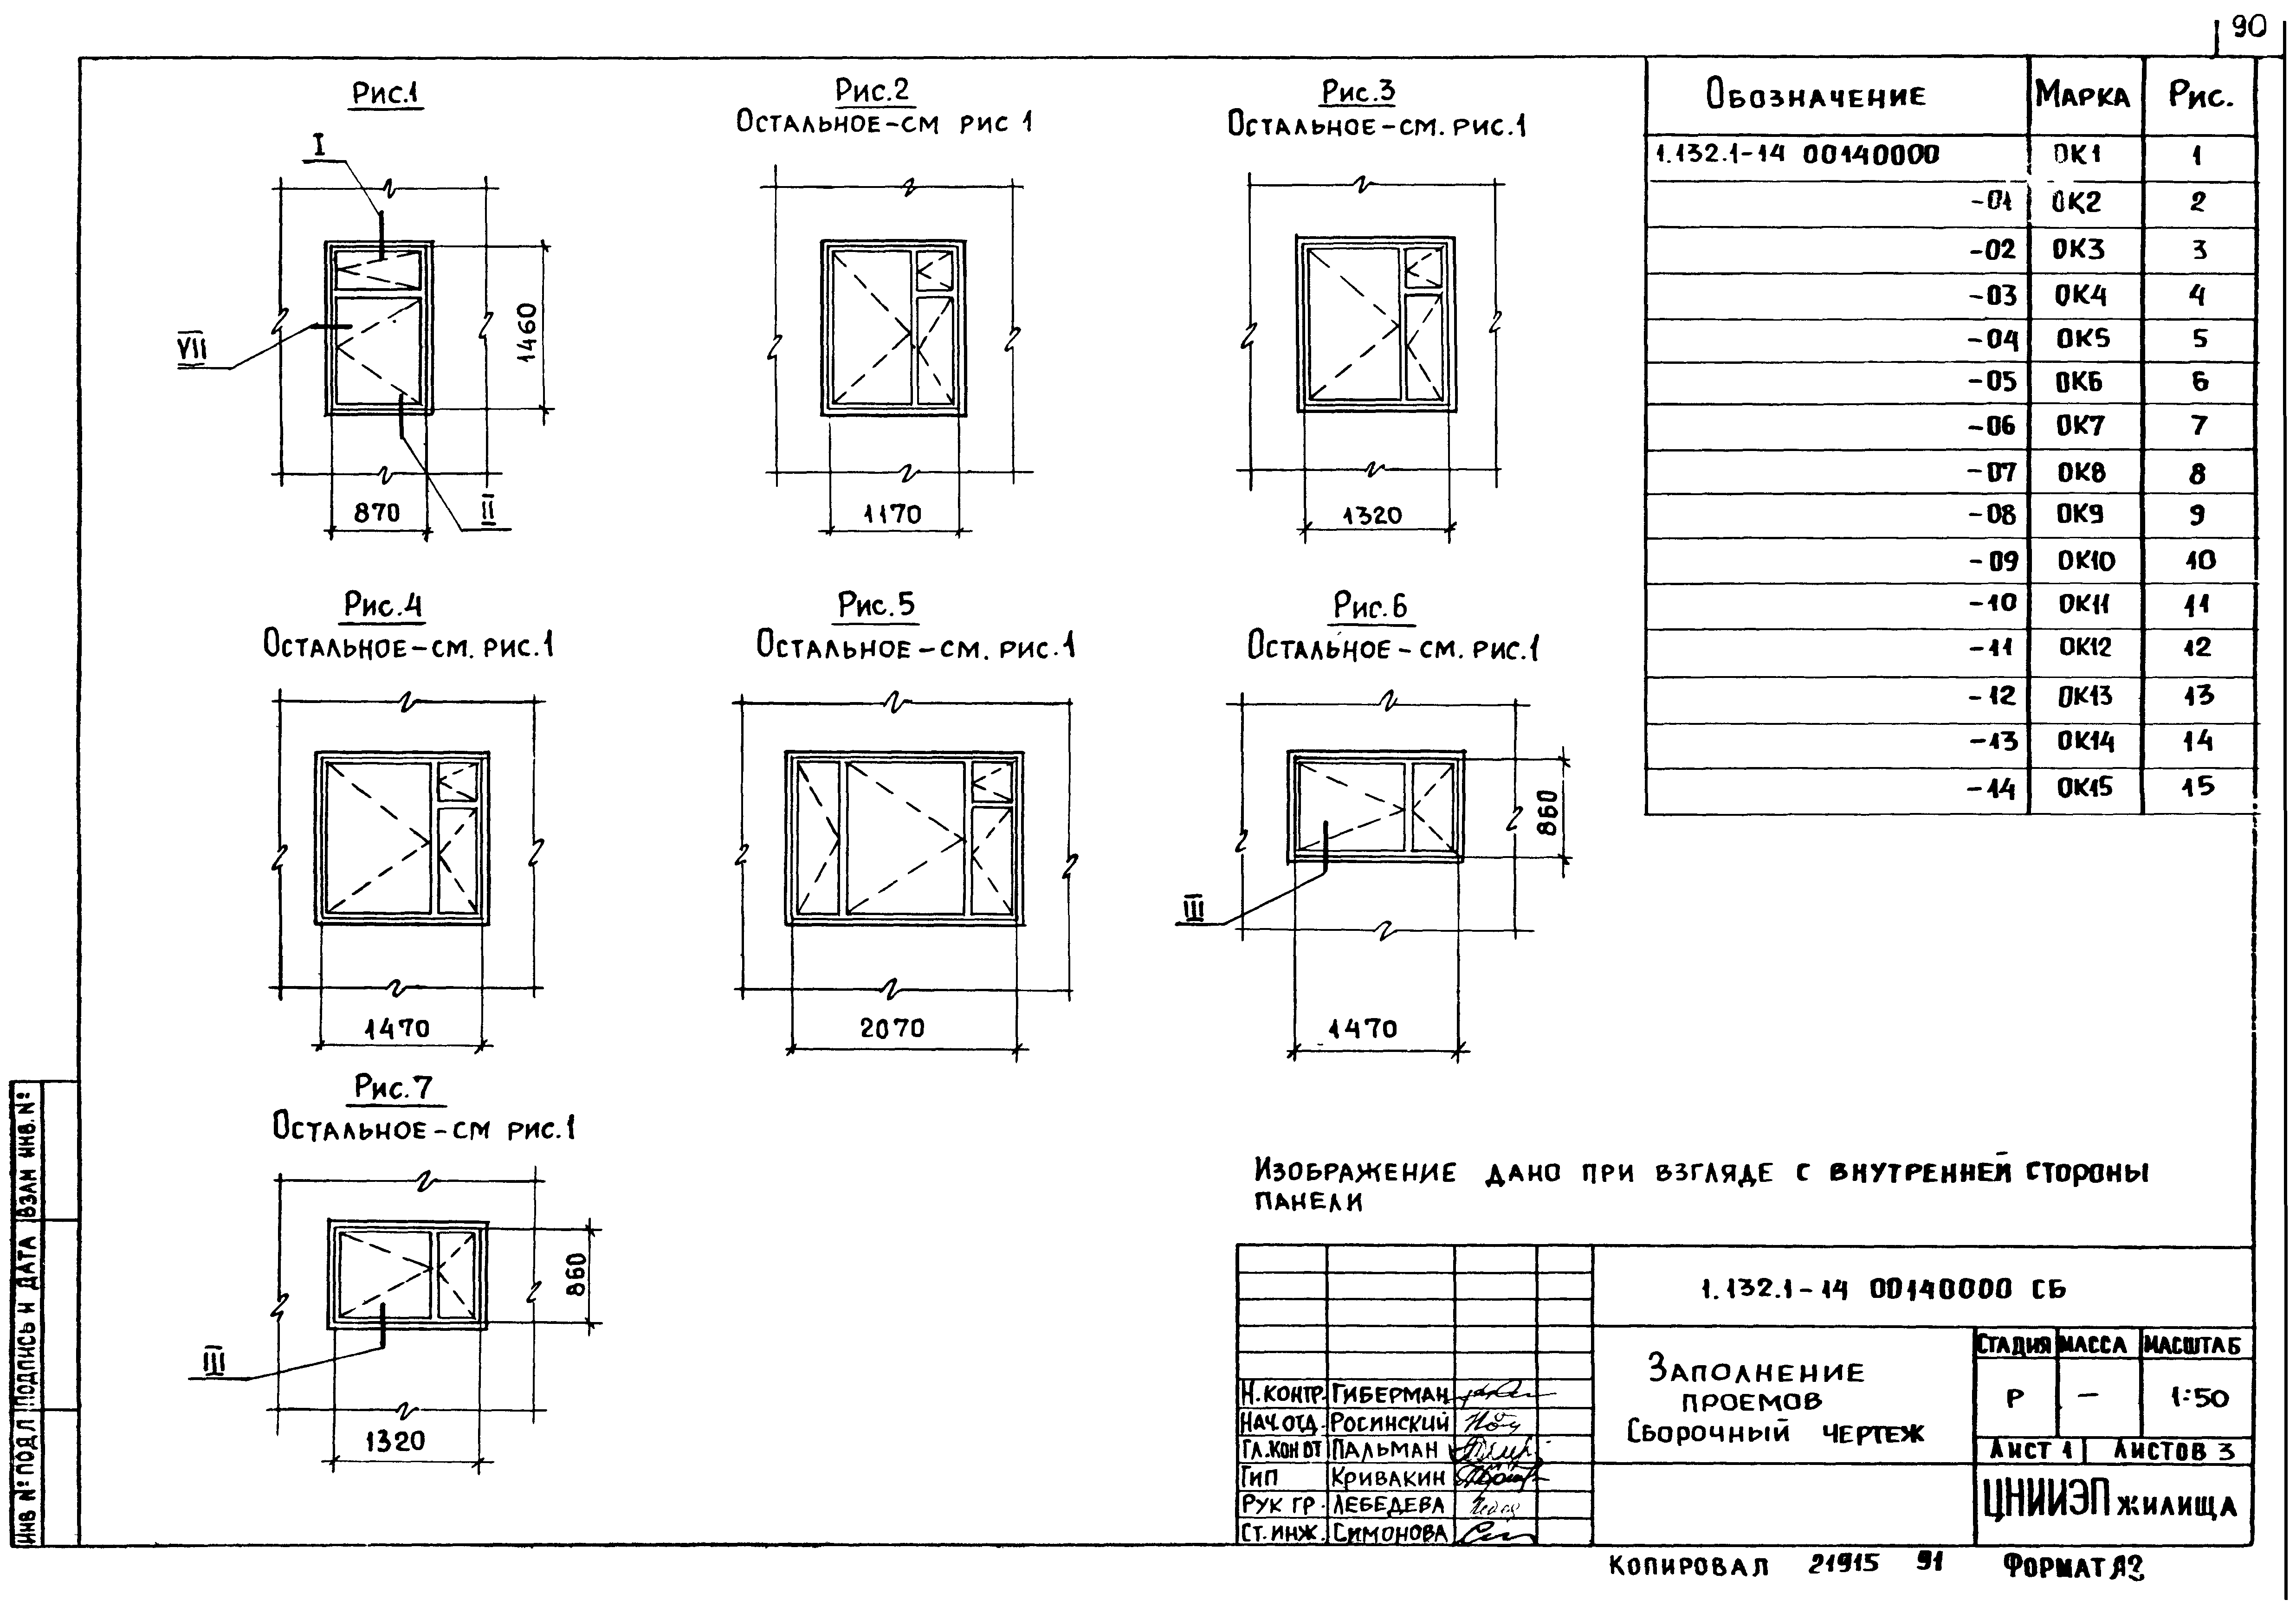 Панели пвх - размеры: для стен и потолков, обзор разновидностей панелей и их свойства